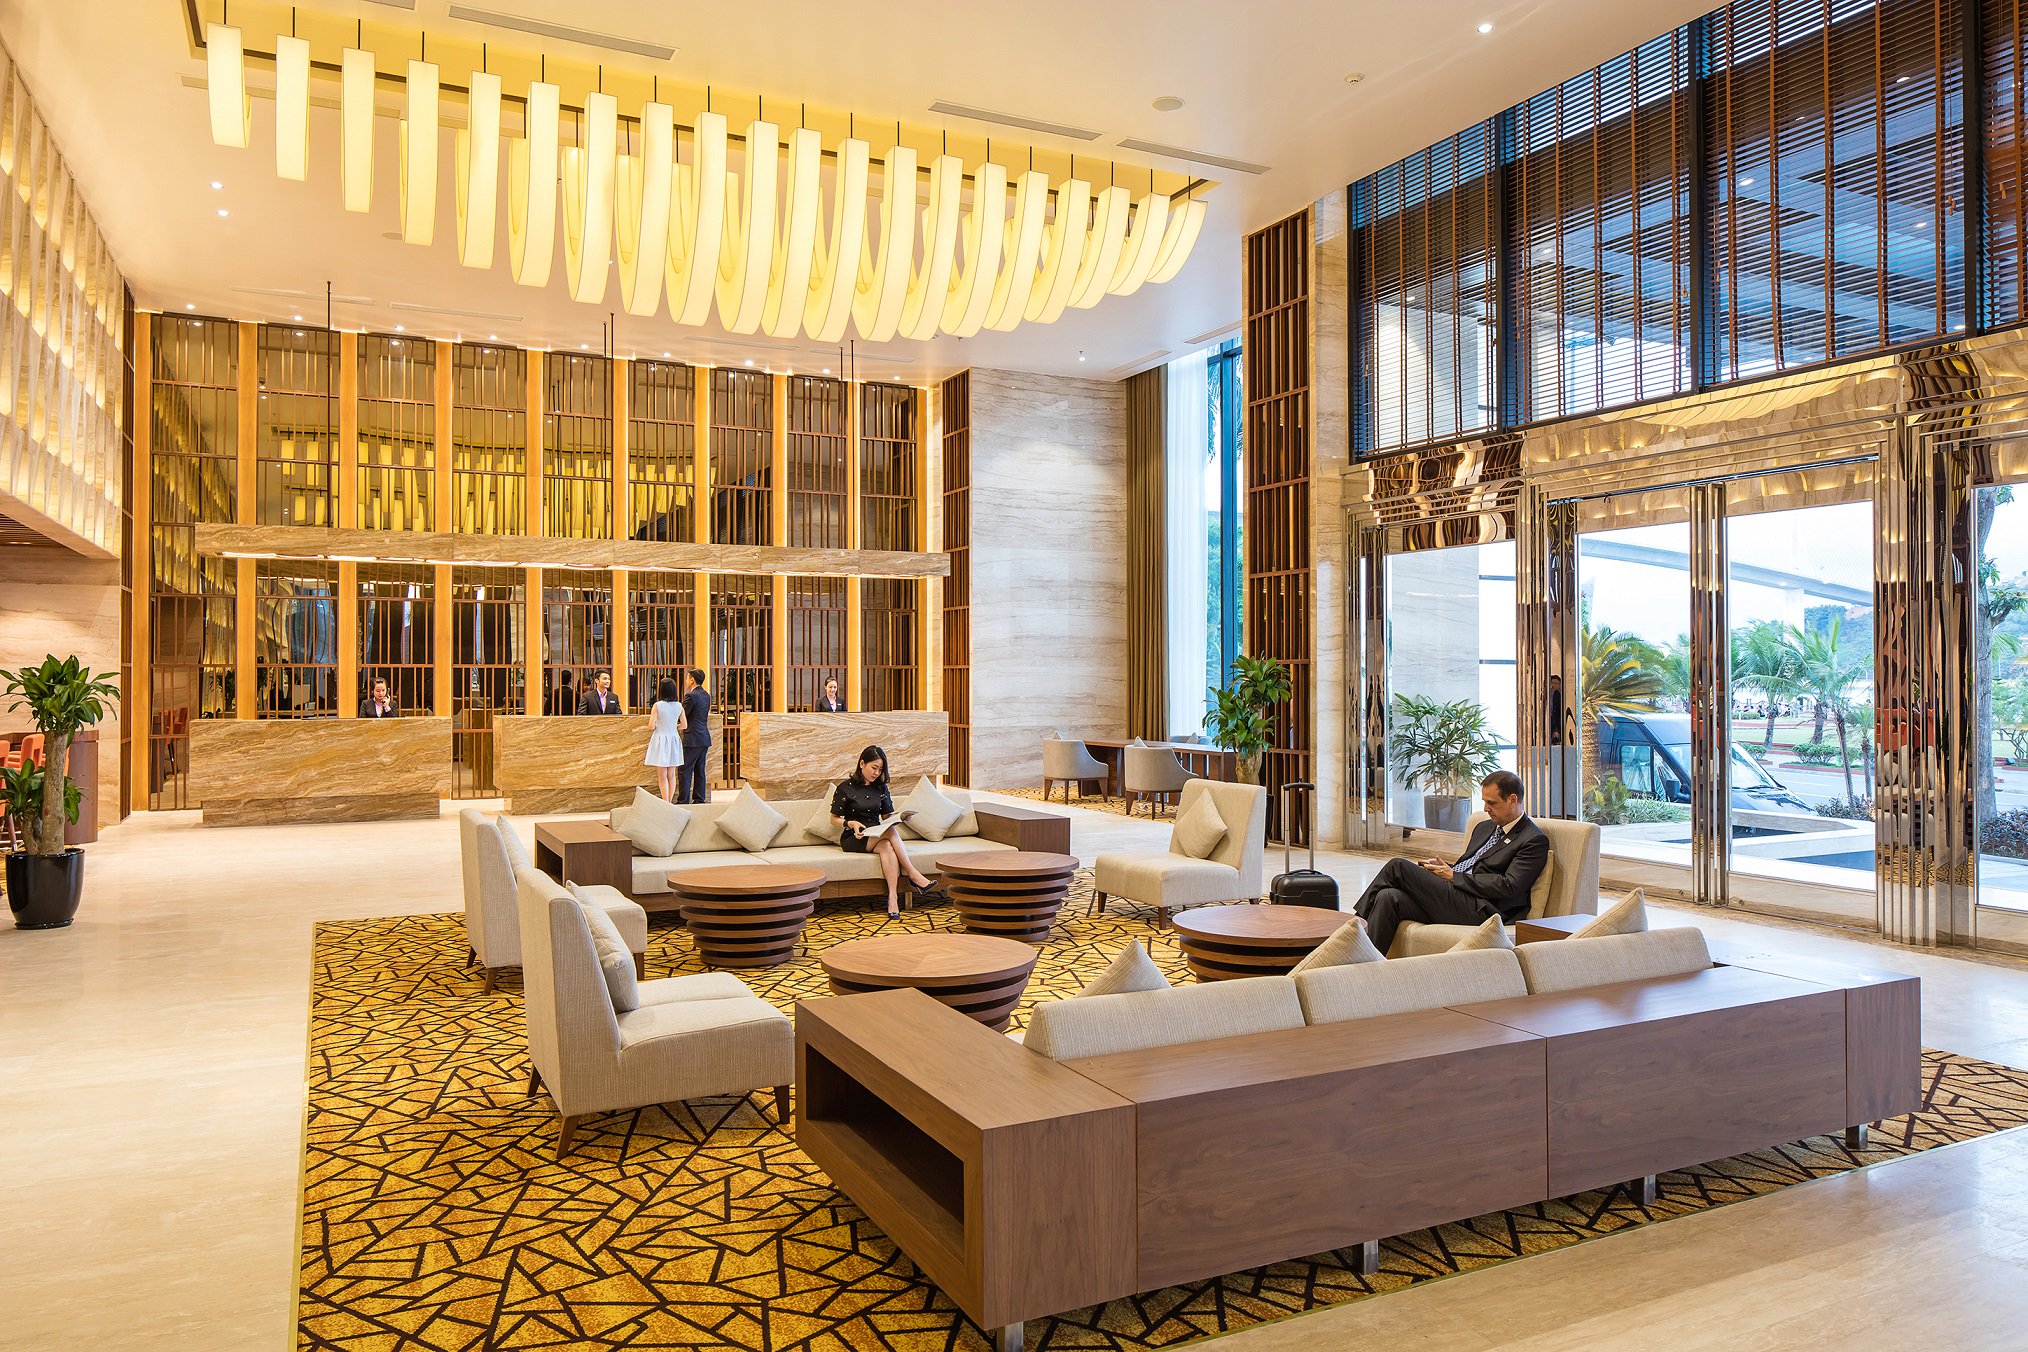 Đến Hạ Long, nên ở khách sạn nào tốt nhất?4